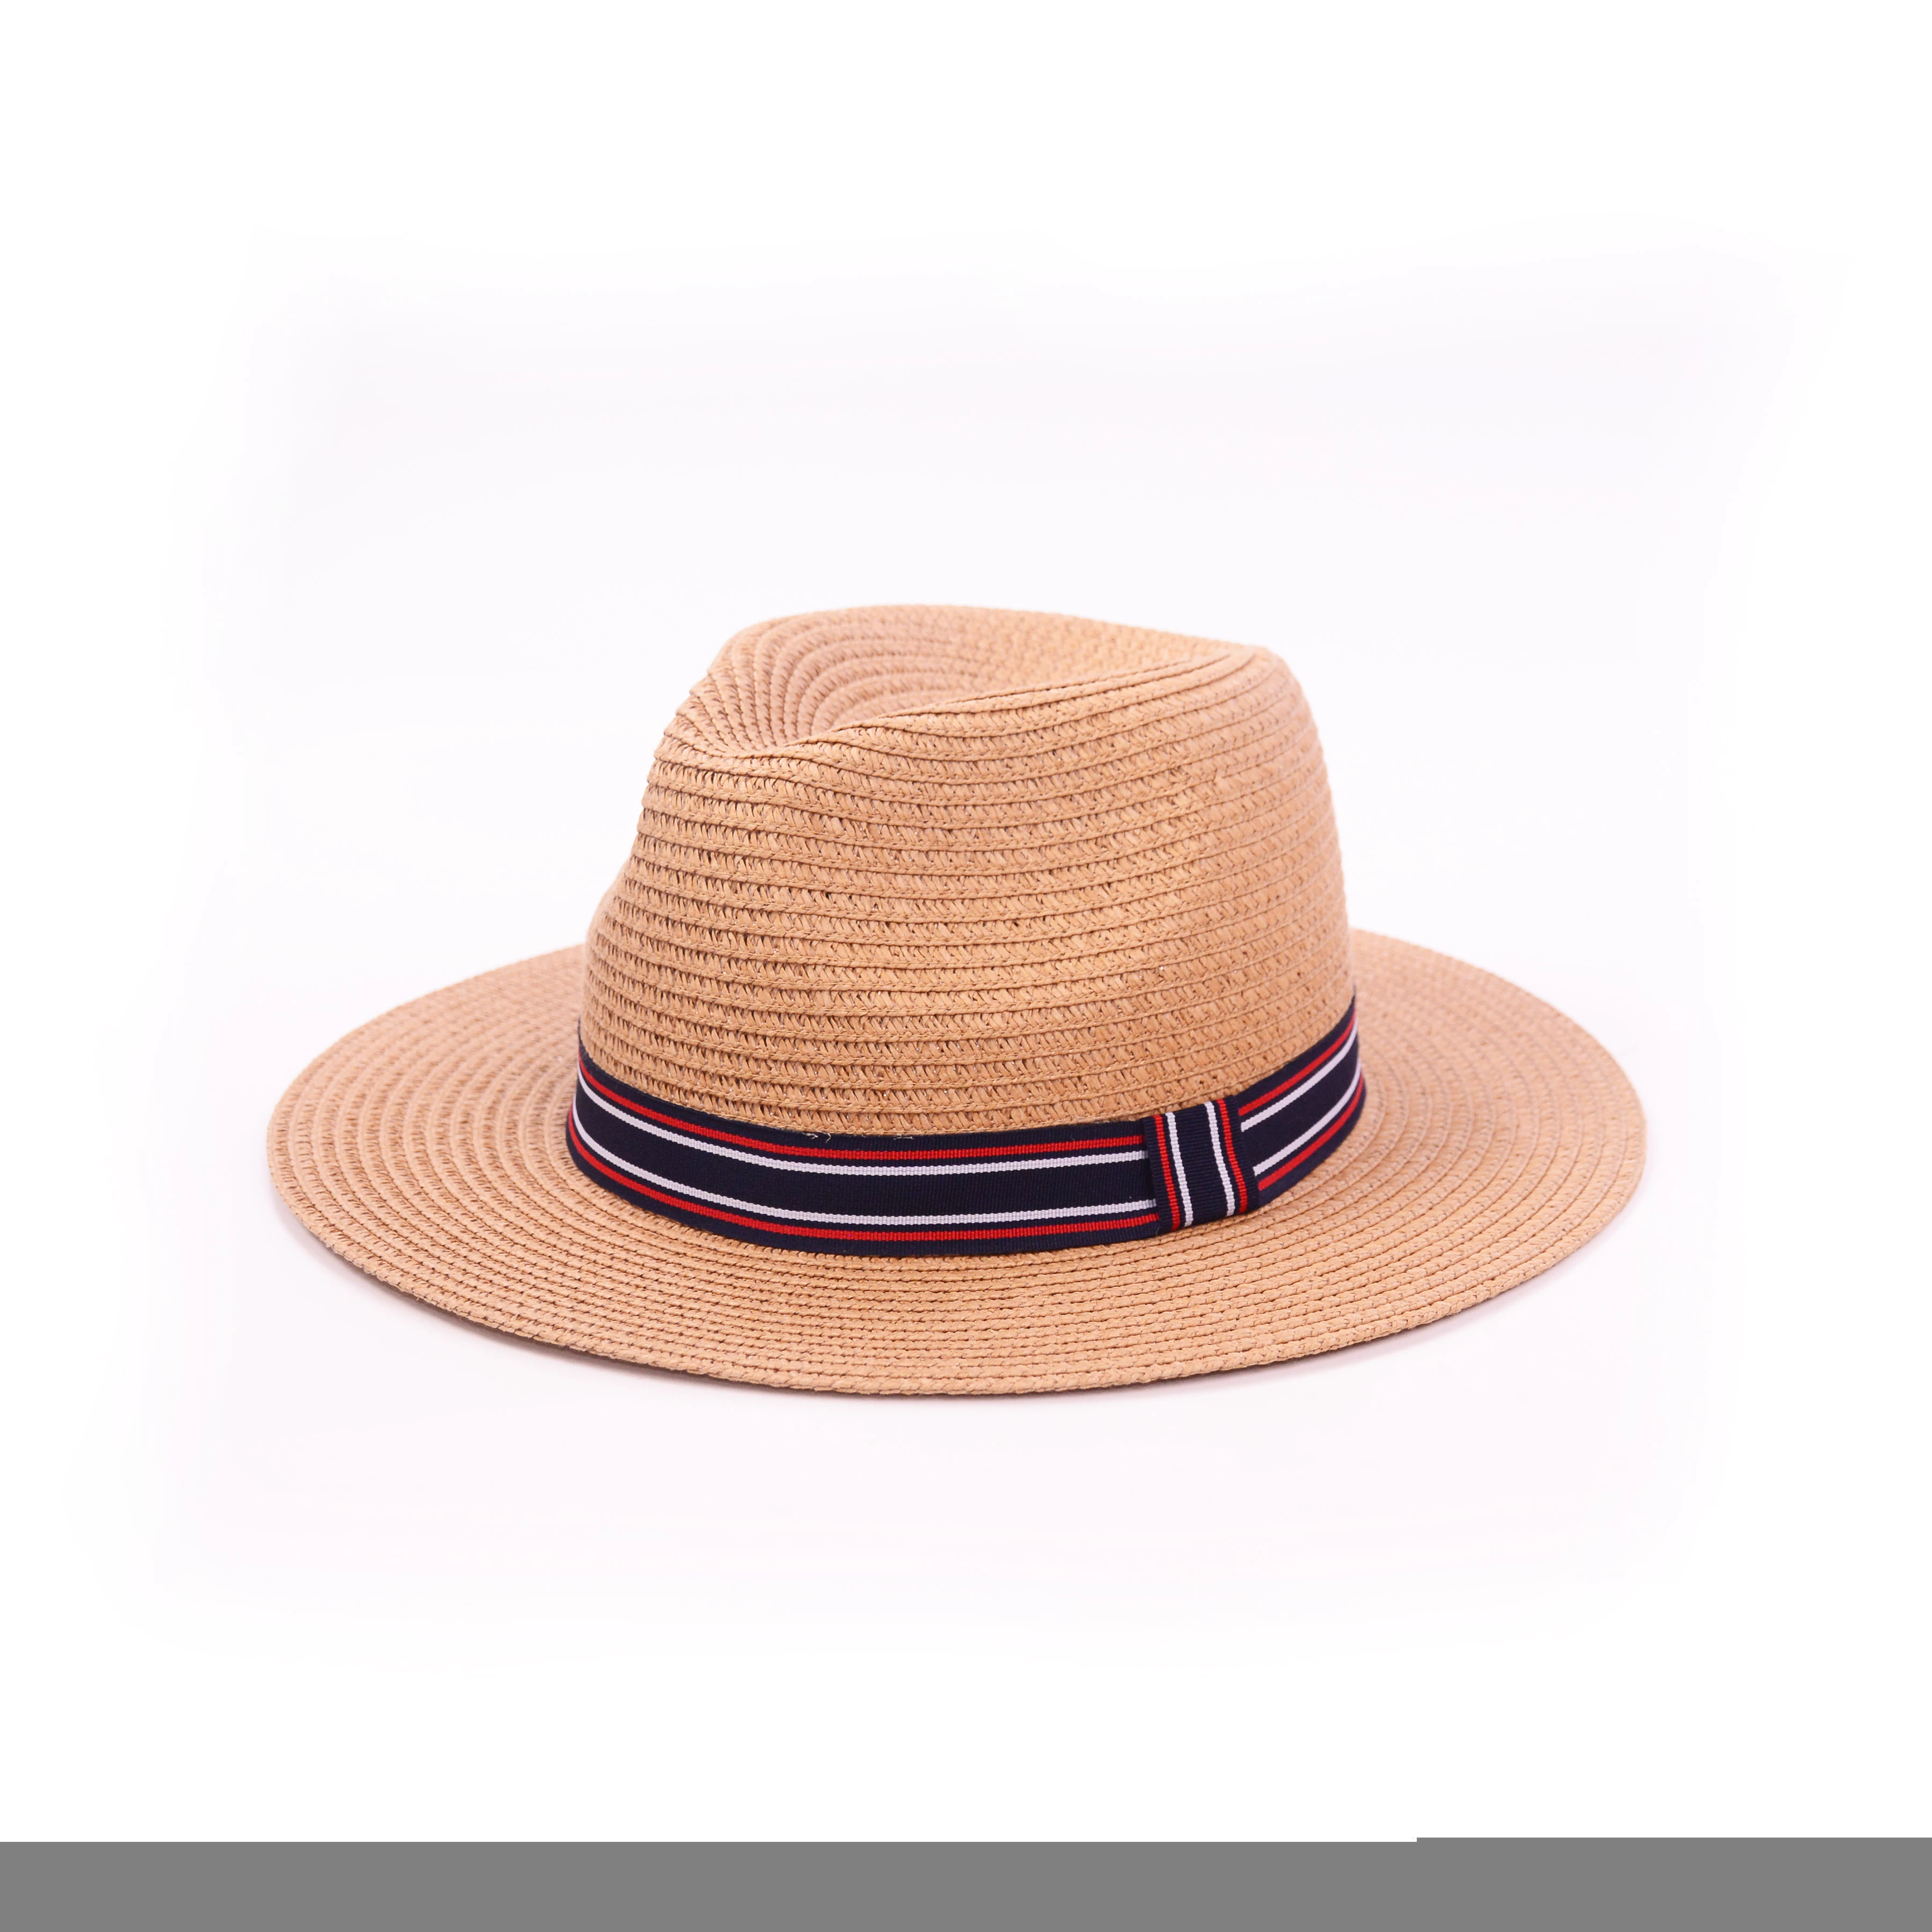 Custom Unisex Fashion Wide Brim Panama Beach Cowboy Straw Fedora Hat